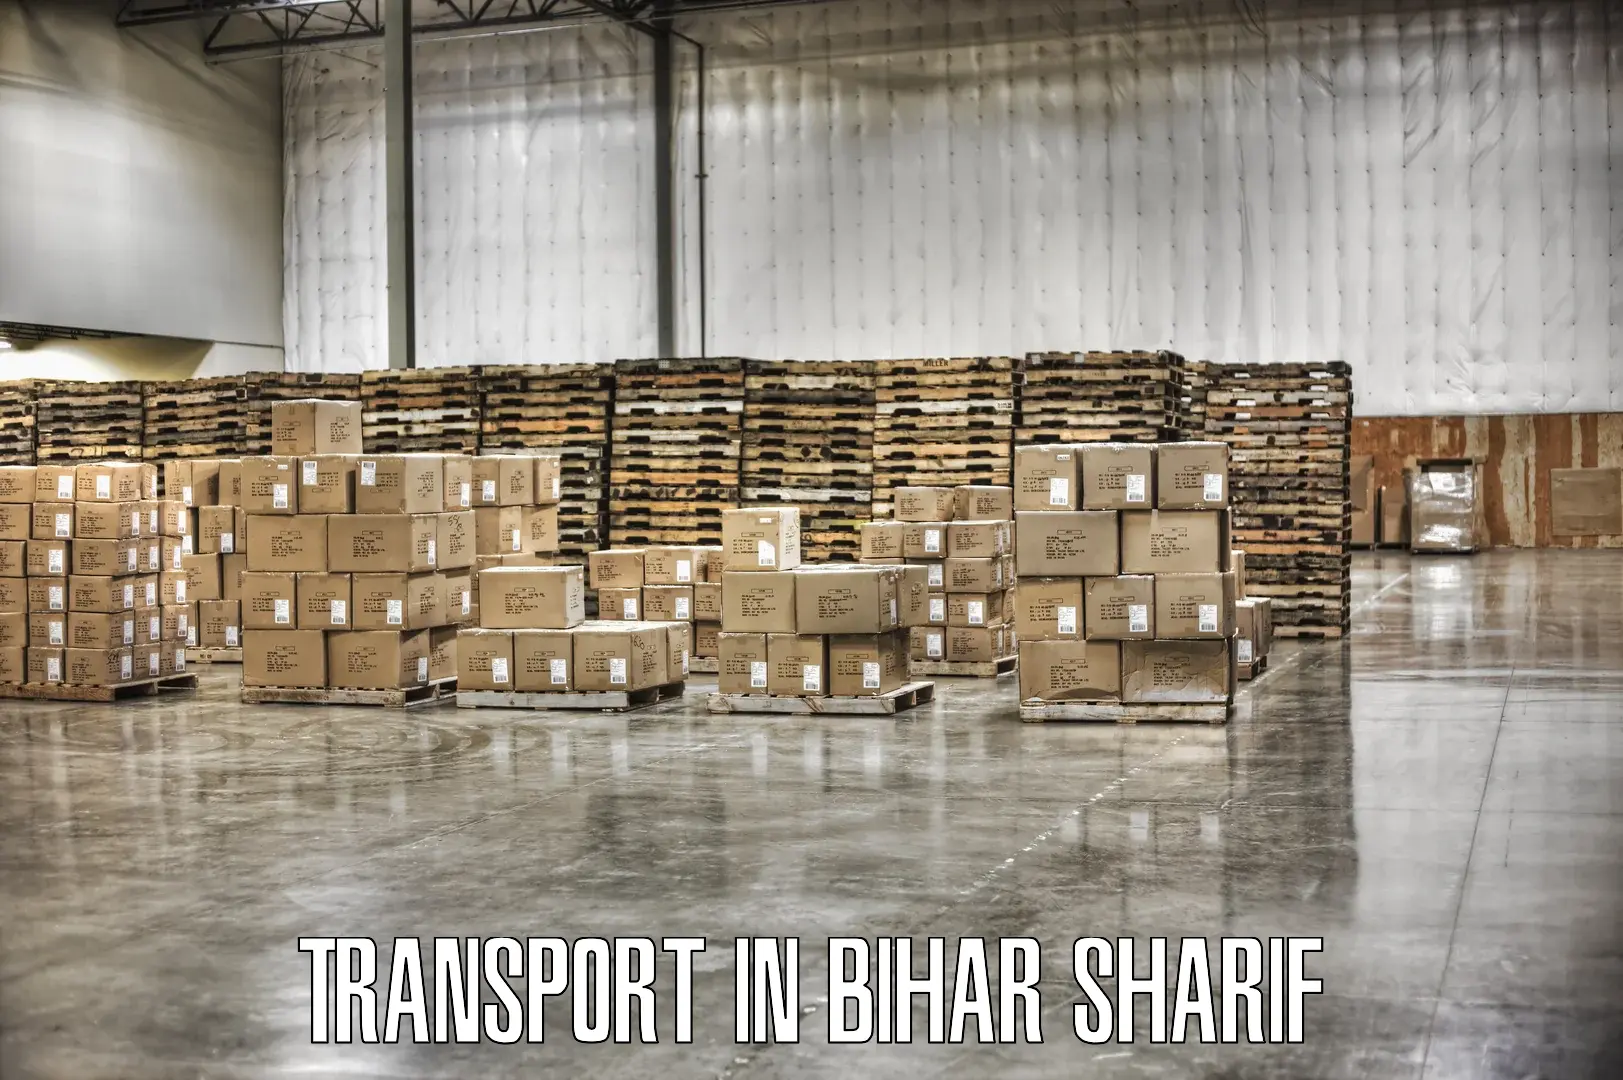 Nearby transport service in Bihar Sharif